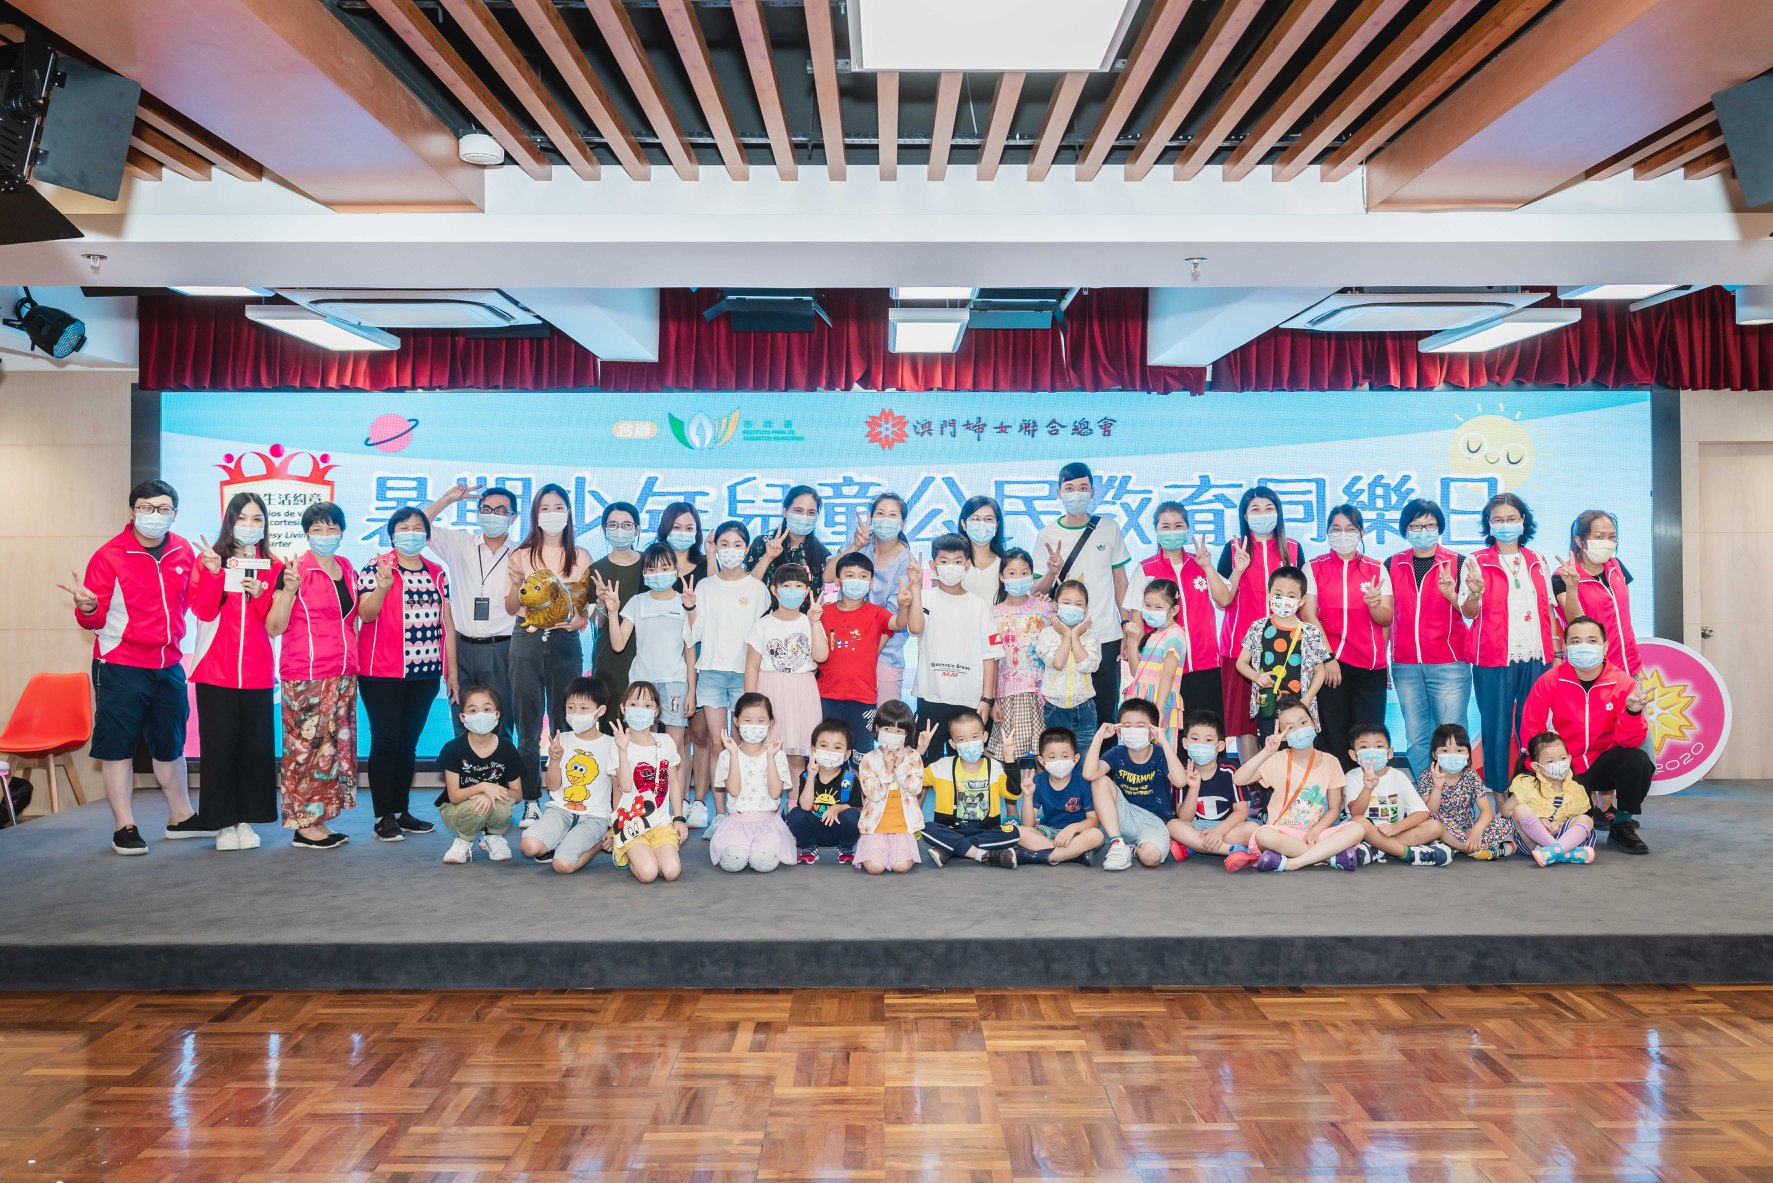 Rainbow 陳彩虹之司儀主持紀錄: 暑期少年兒童公民教育同樂日